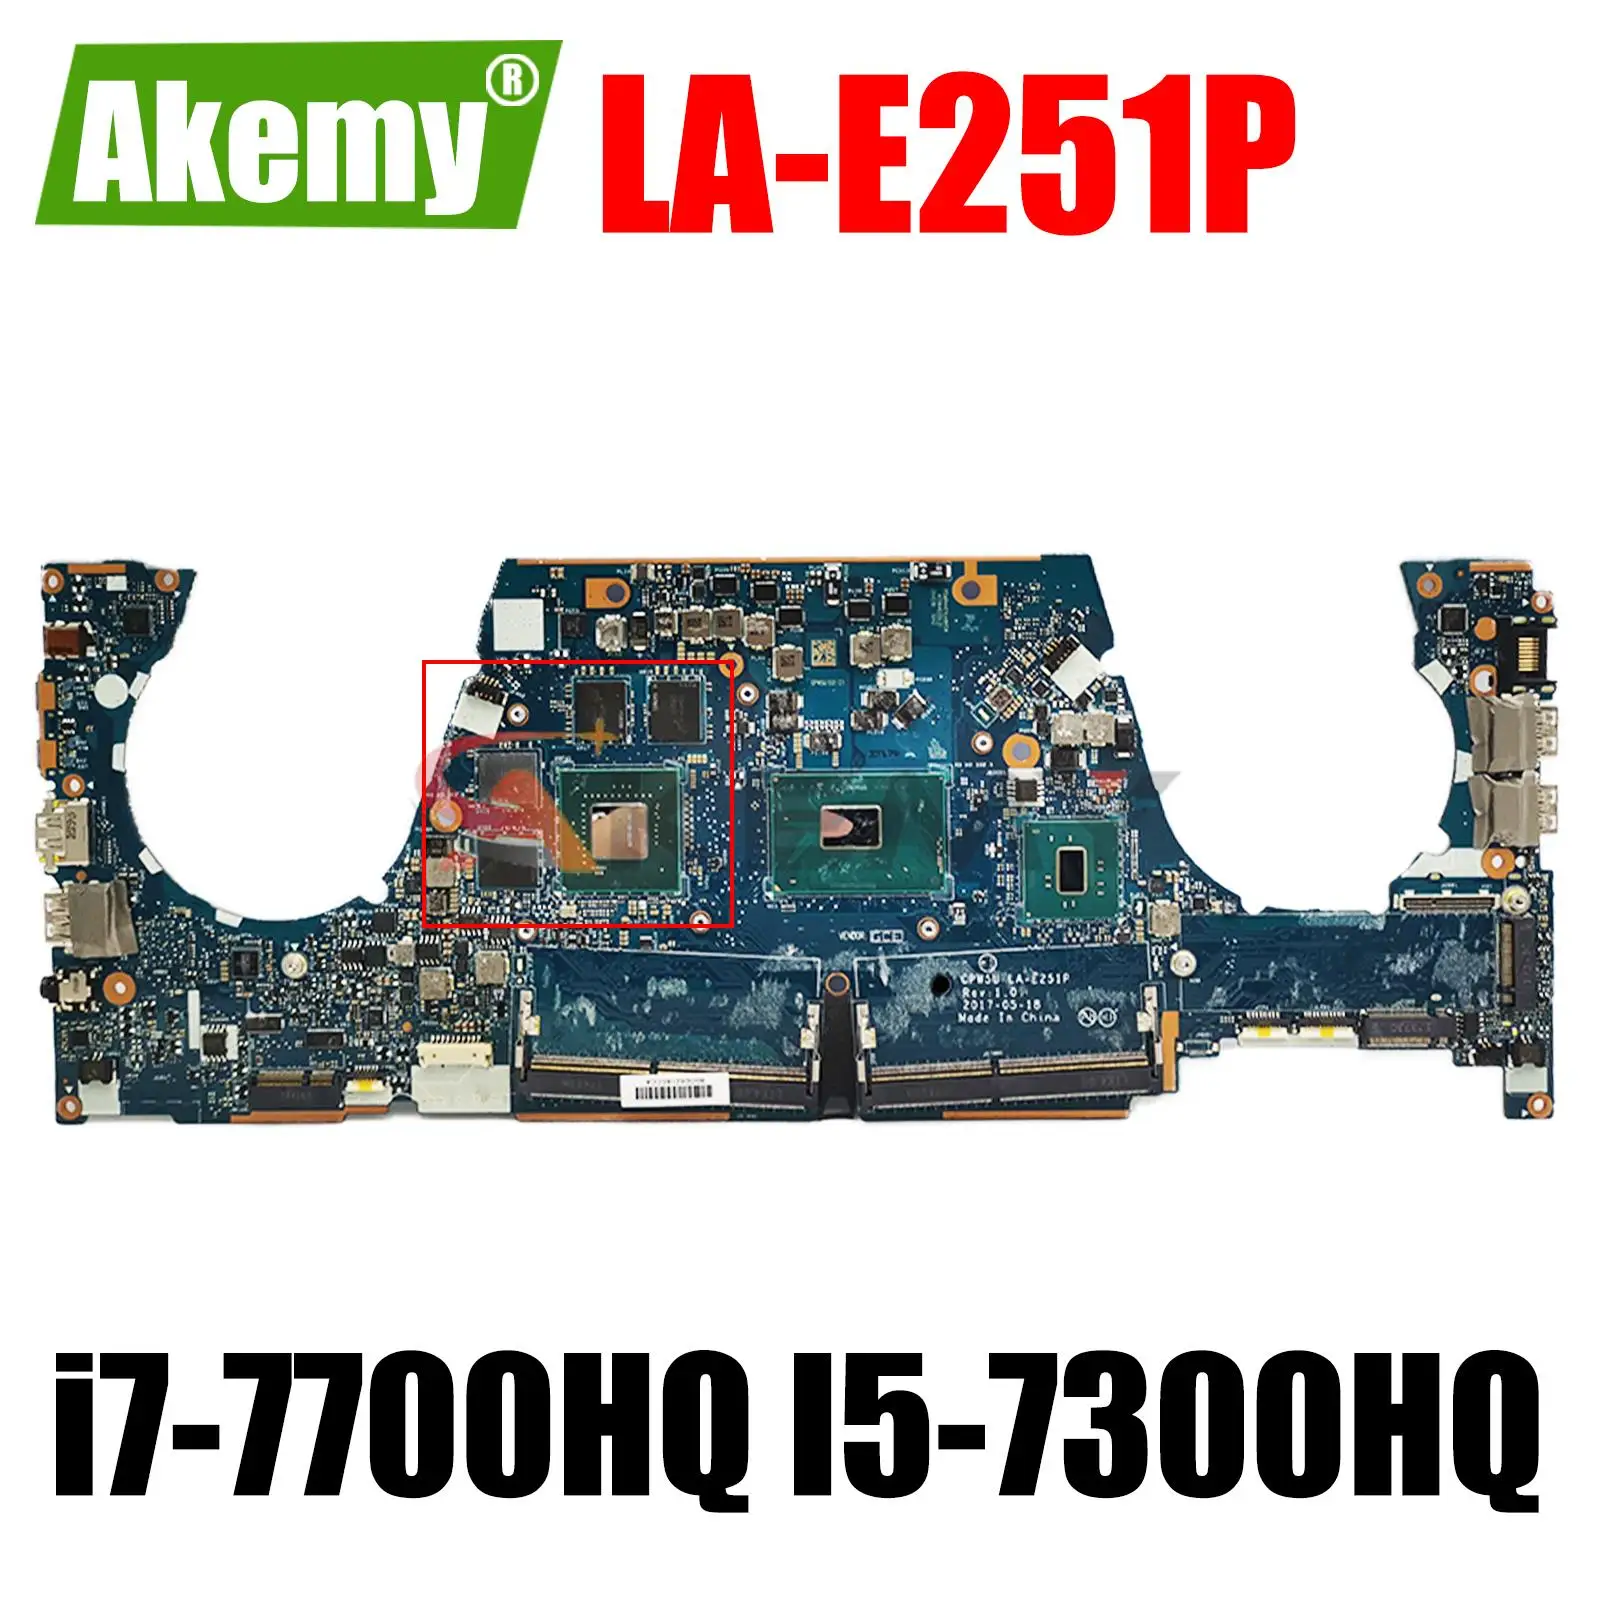 

For Hp Zbook Studio G4 15 G5 G6 Laptop Motherboard With i7-7700HQ I5-7300HQ CPU Quadro M1200 LA-E251P